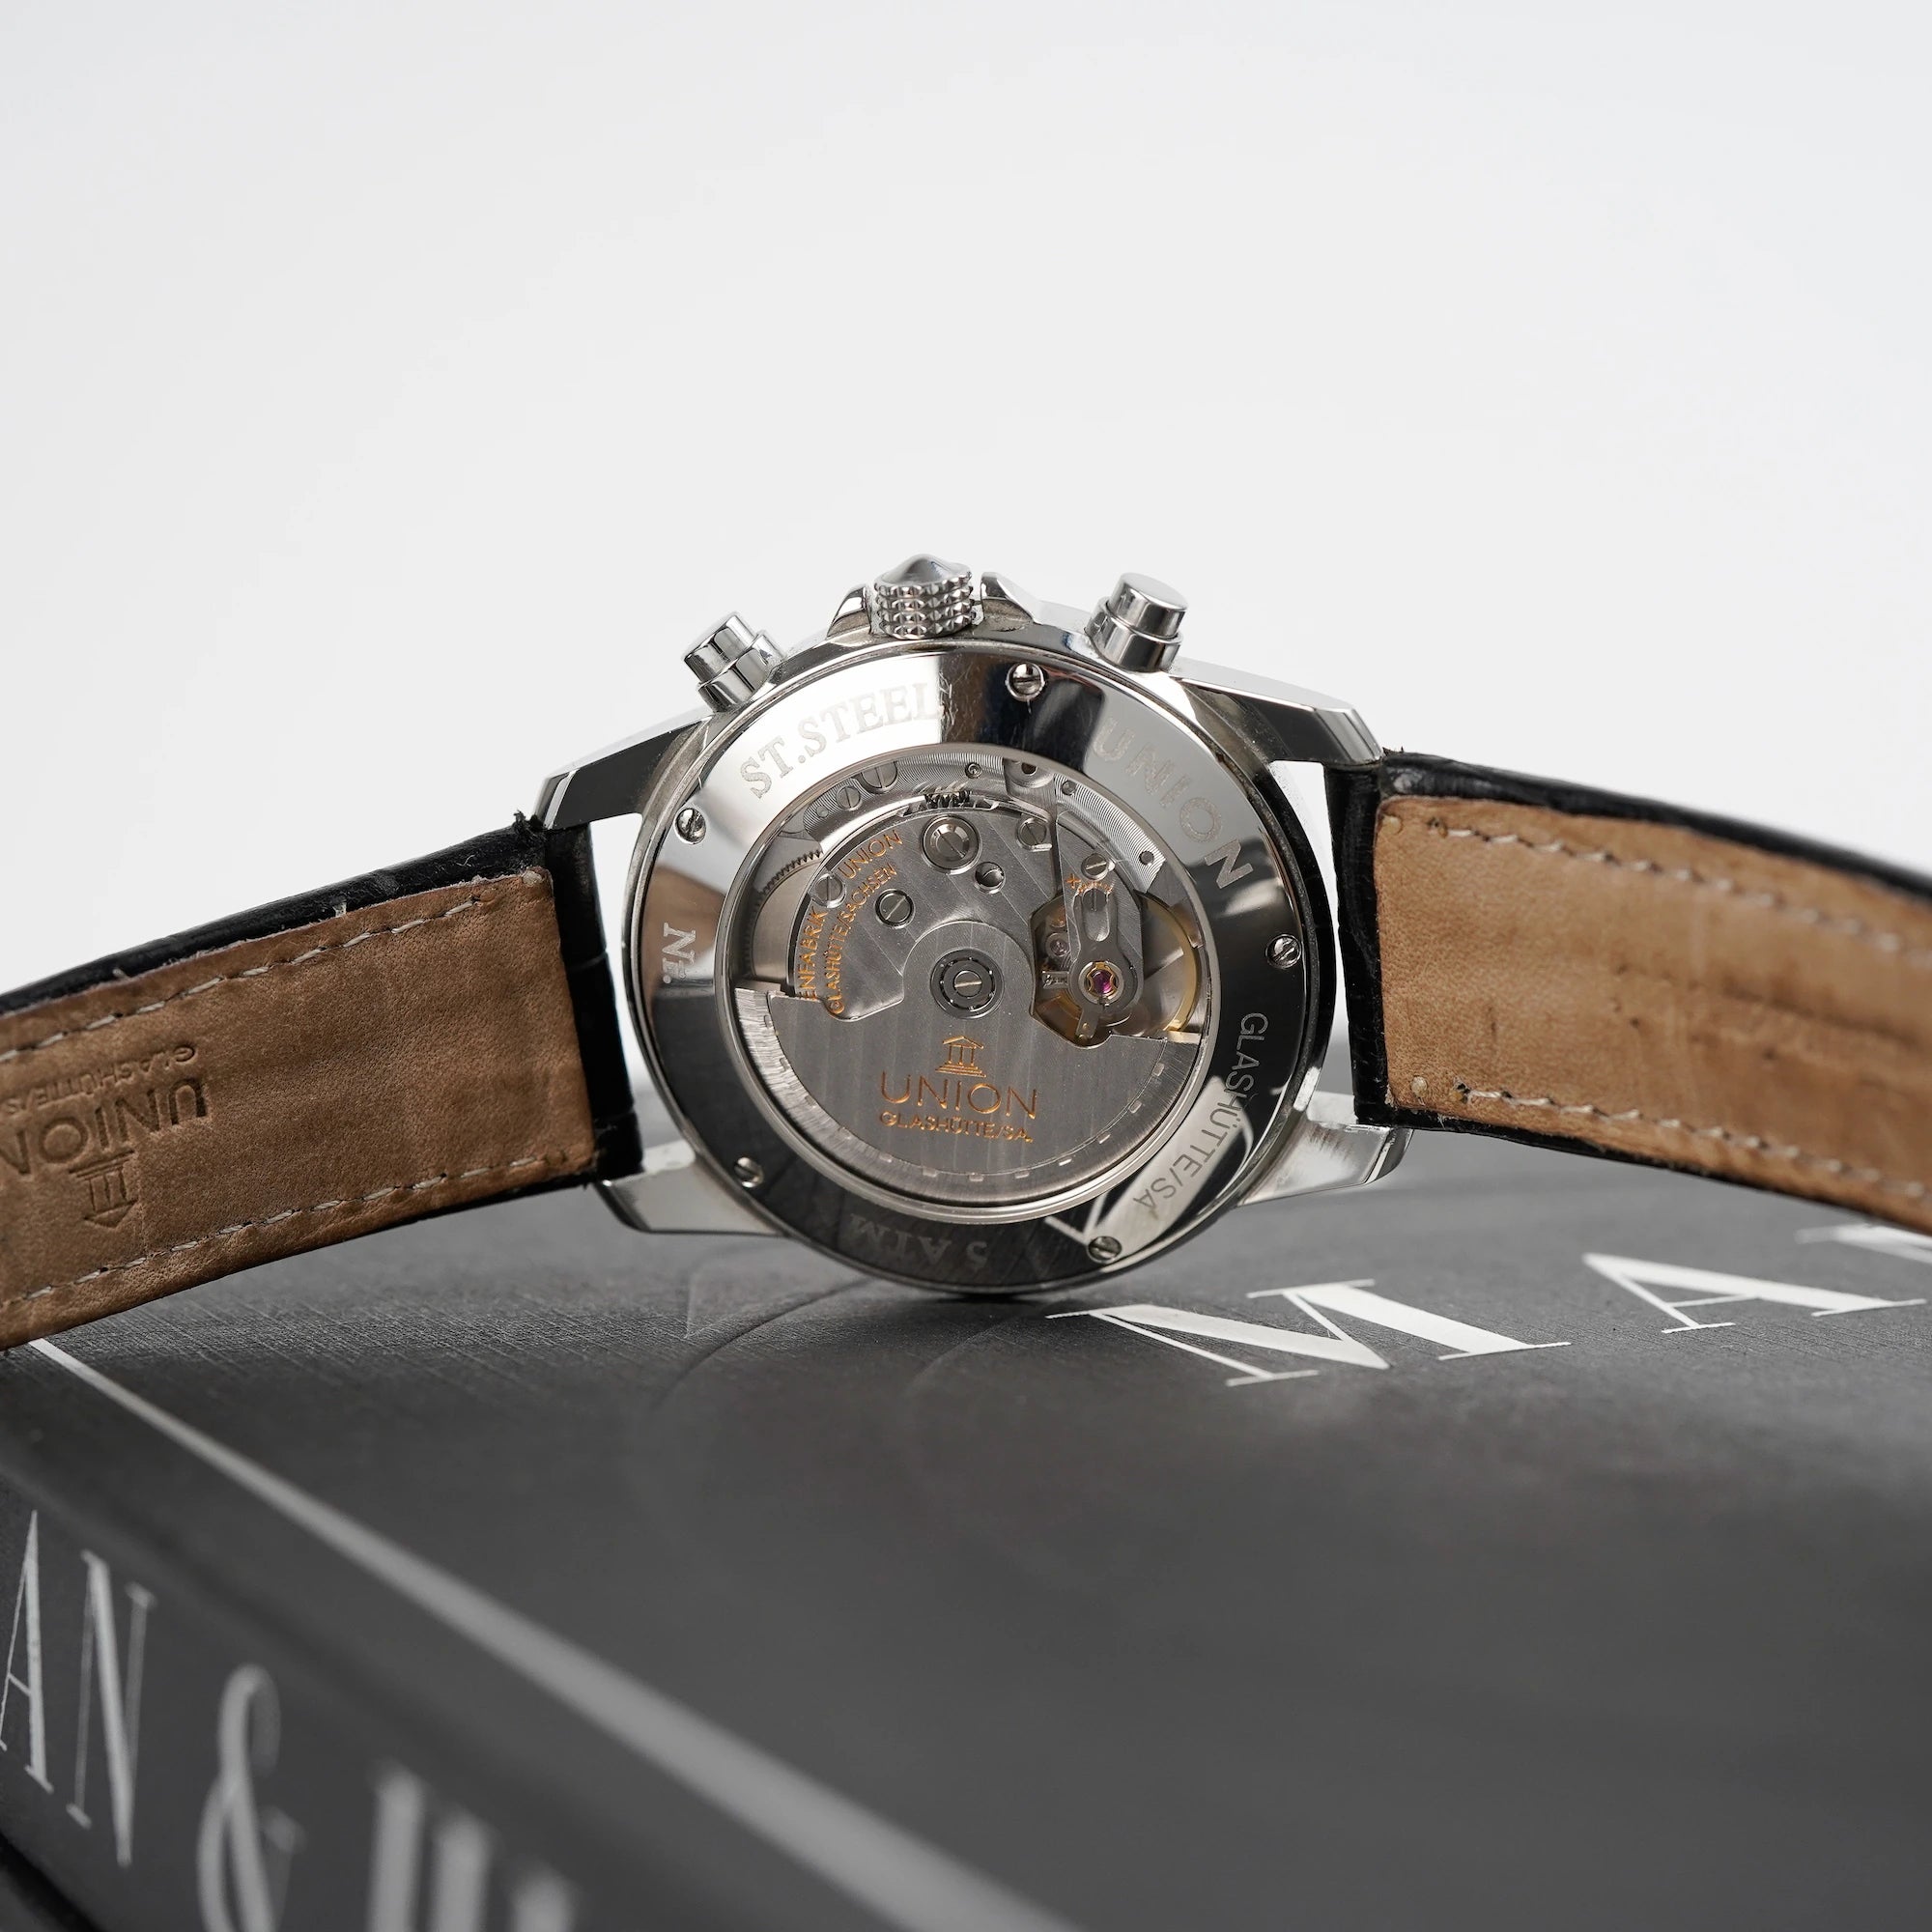 Tradition Chronograph von Union Glashütte liegt auf dem bekannten Uhrenbuch  "A Man & His Watch" und man blickt auf das gläserne Case Back